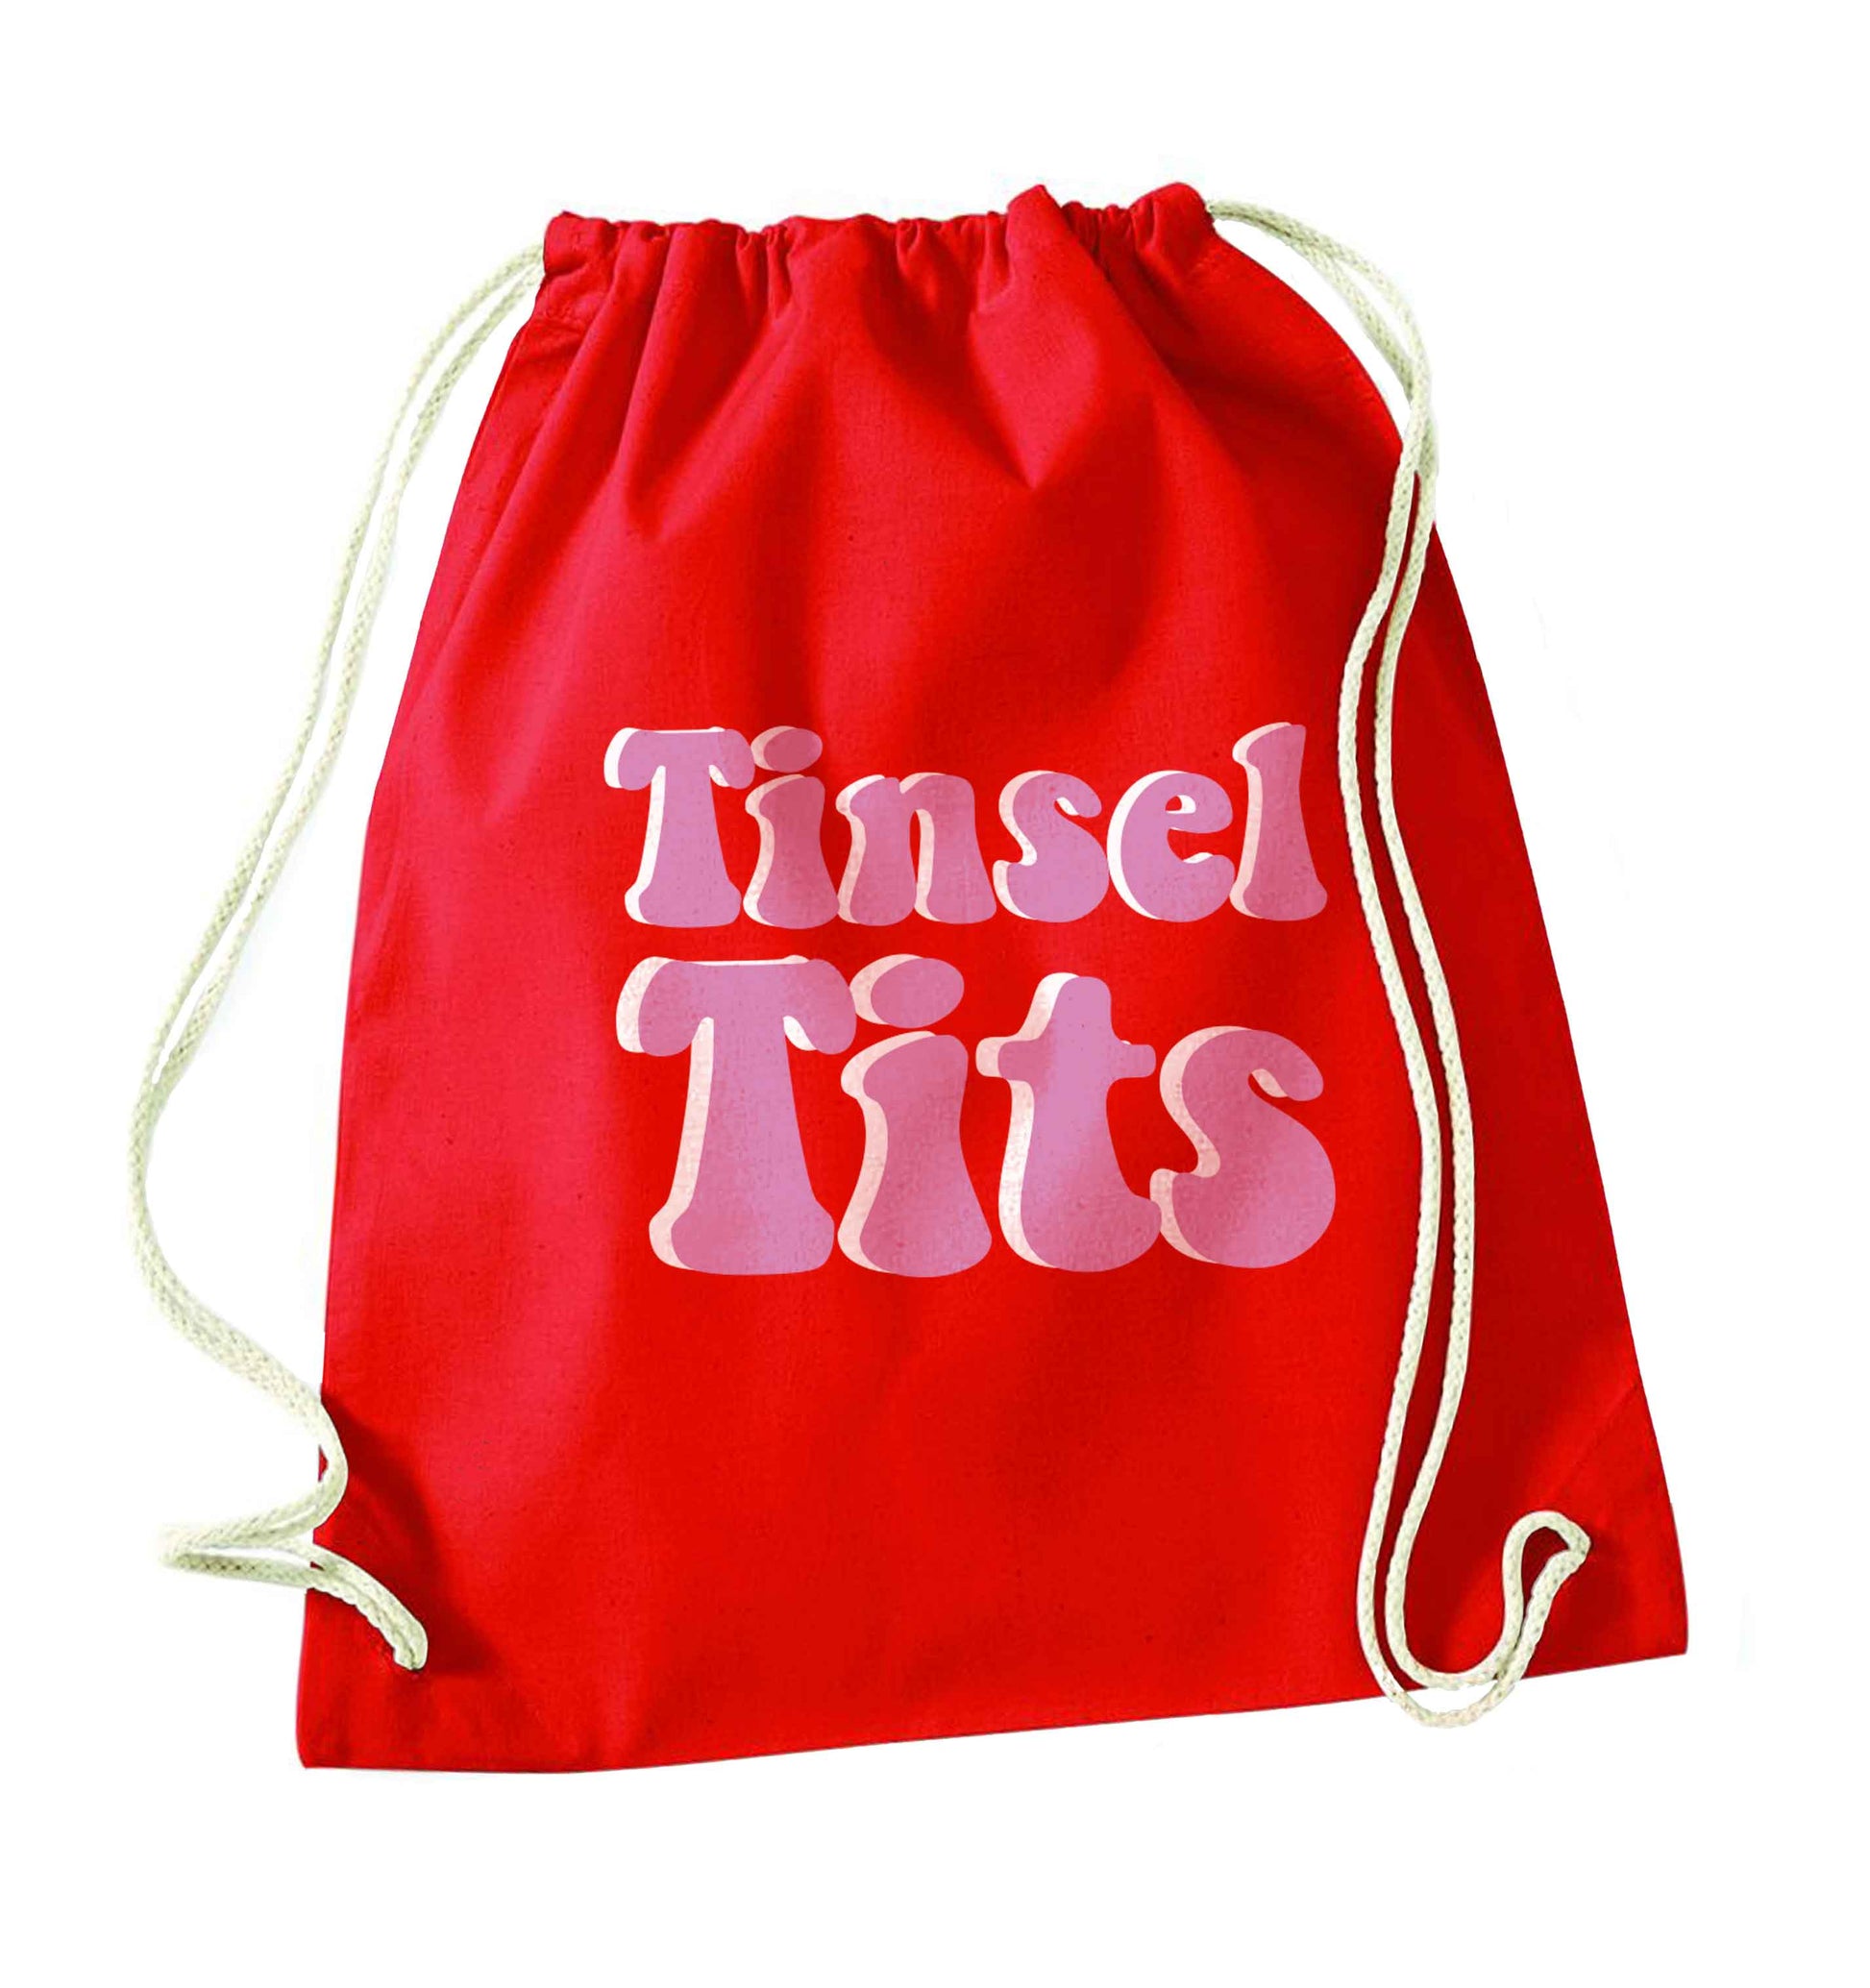 Tinsel tits red drawstring bag 